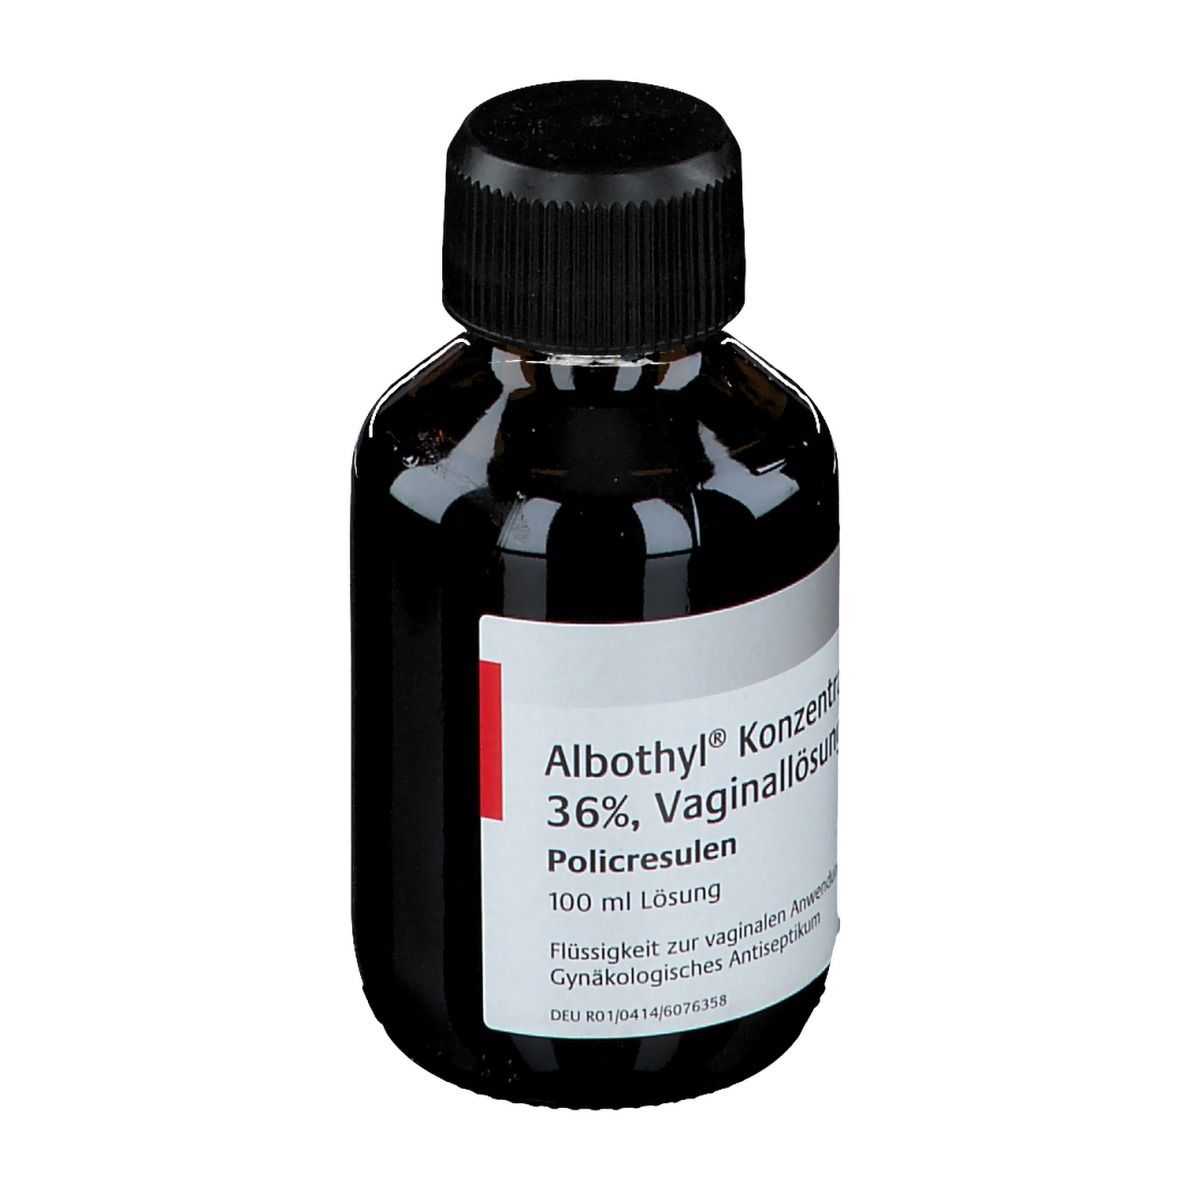 Albothyl® Konzentrat